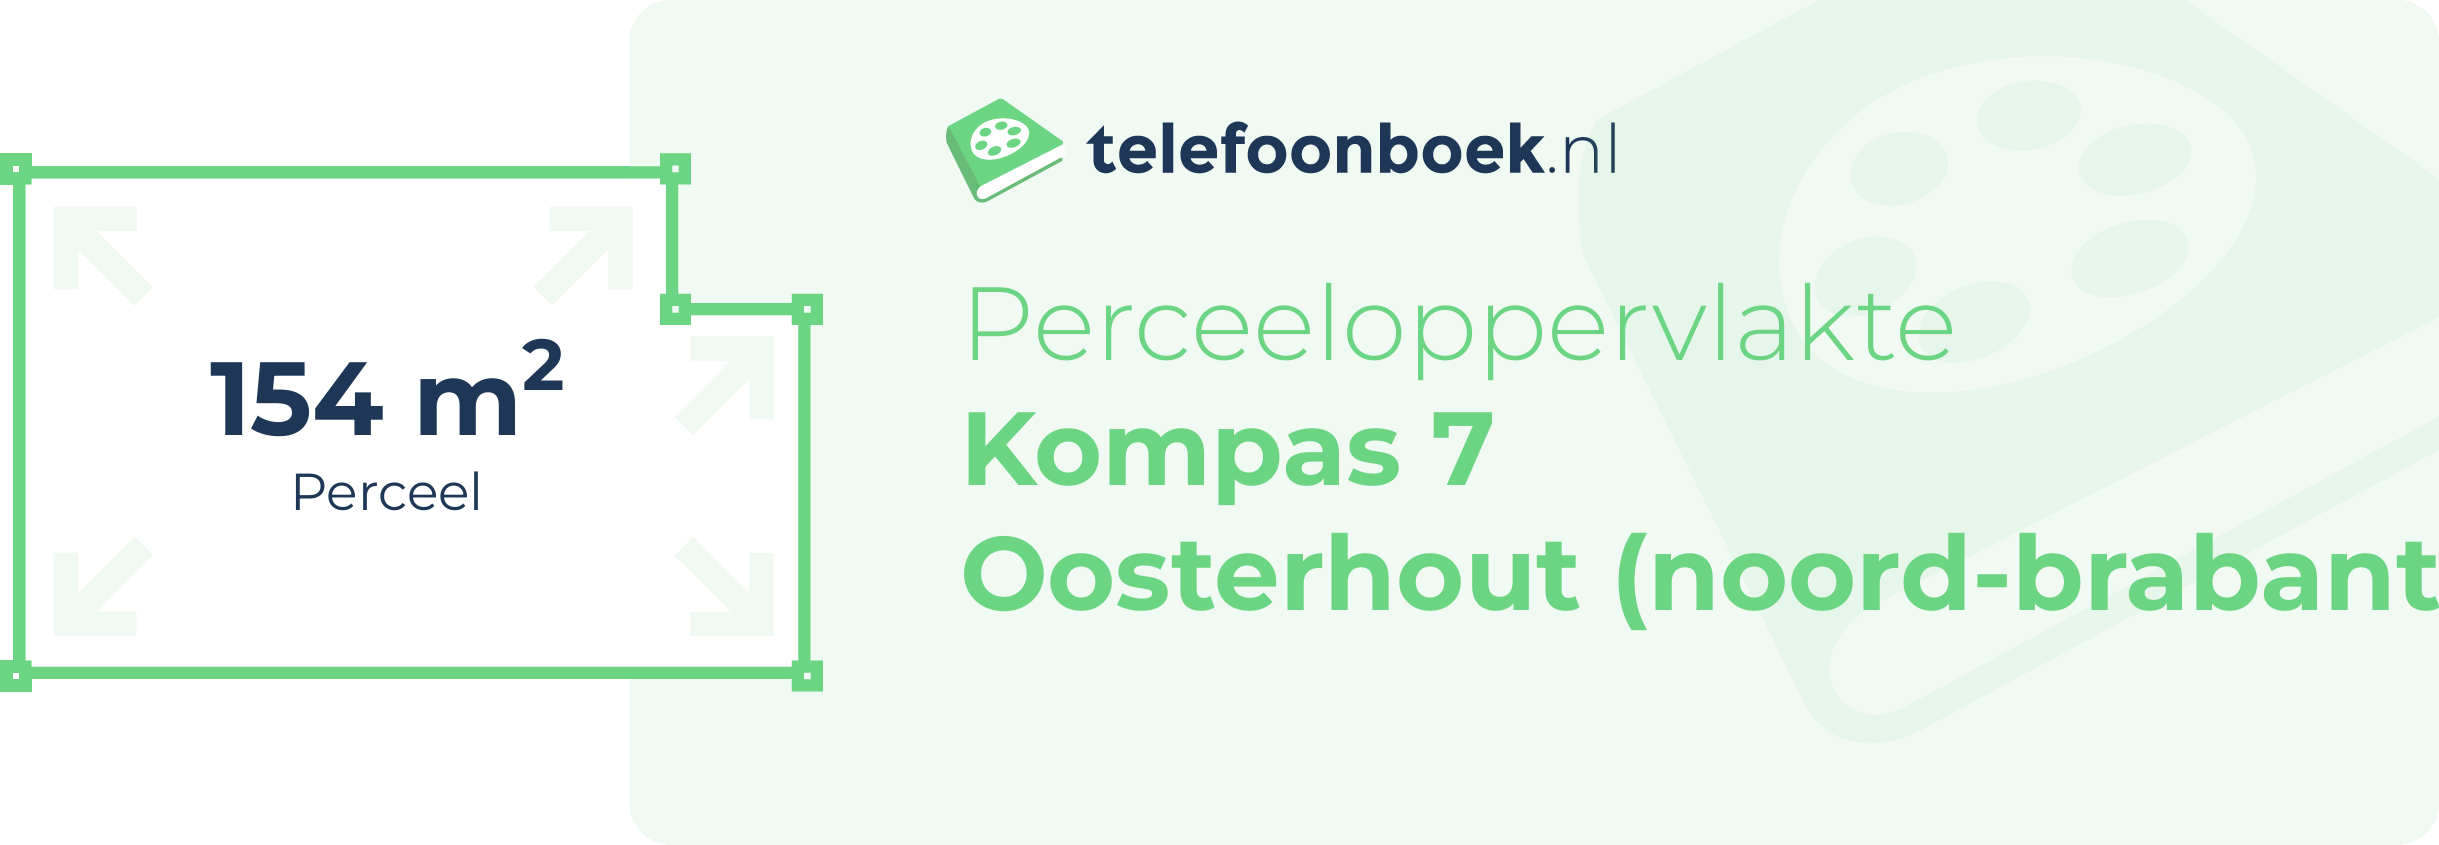 Perceeloppervlakte Kompas 7 Oosterhout (Noord-Brabant)